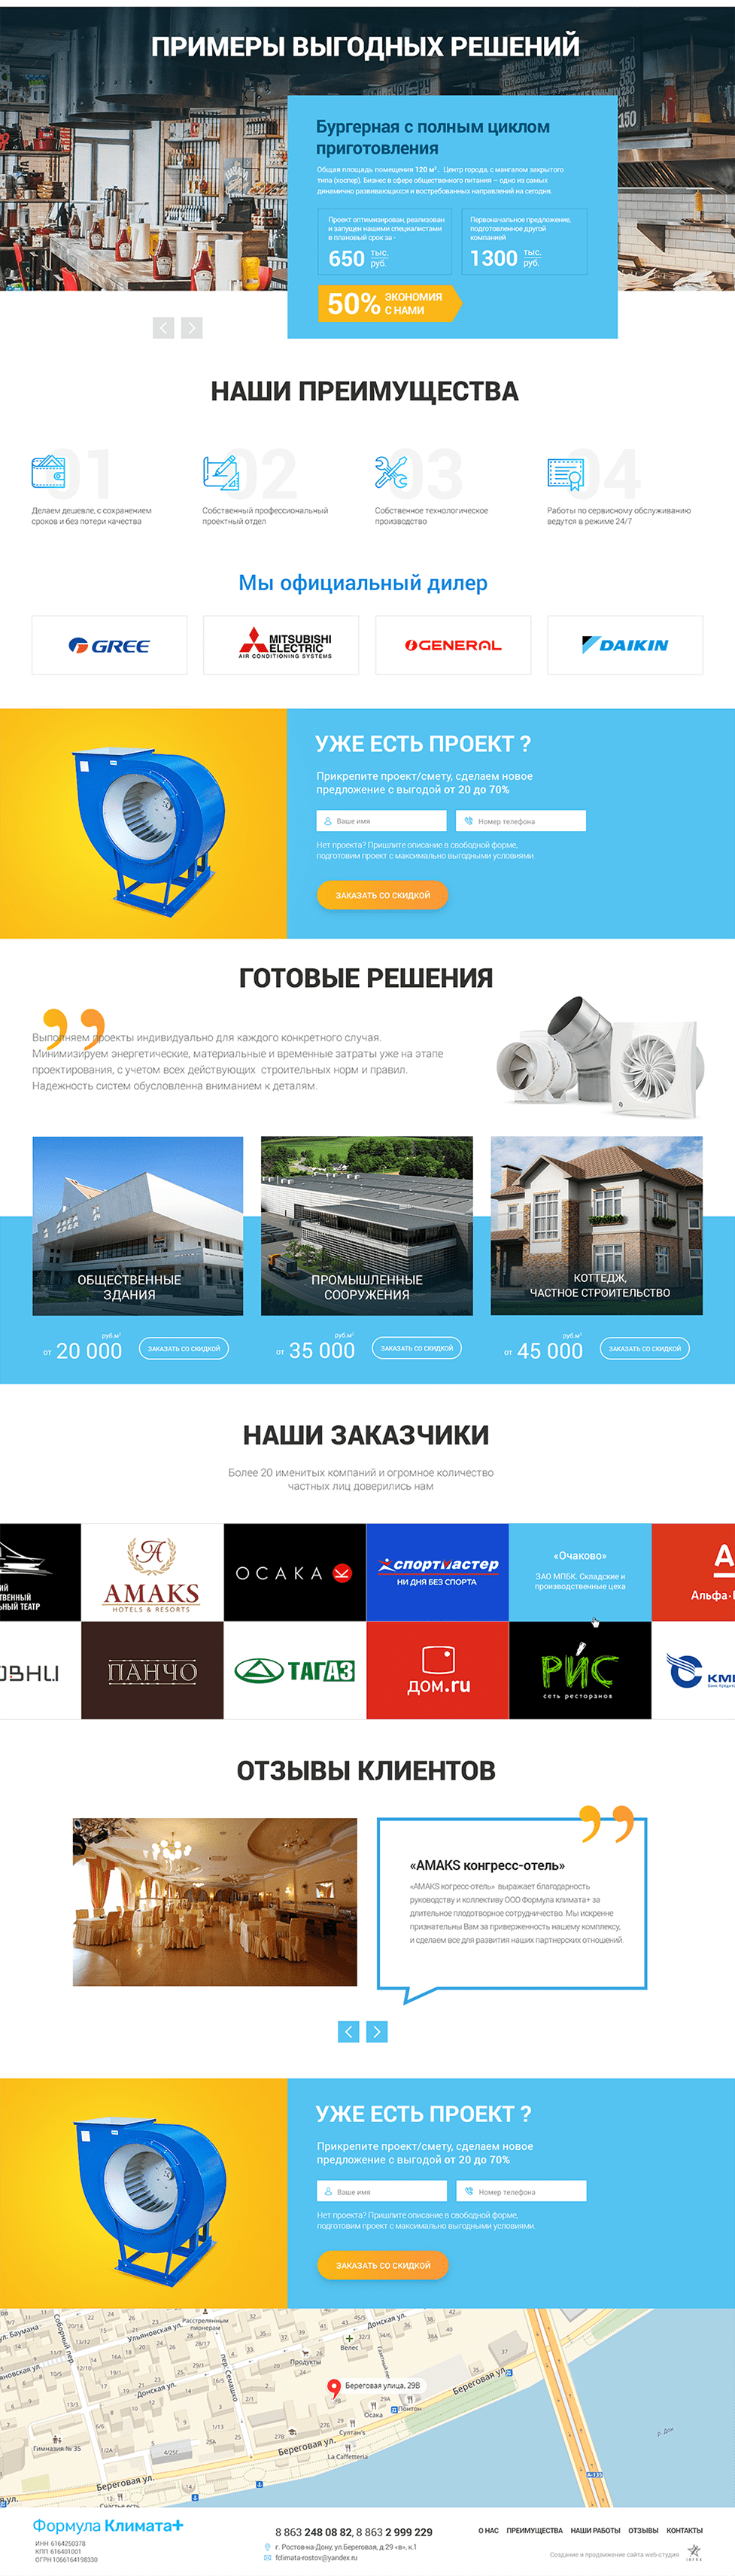 Второй и последующие экраны главной страницы сайта https://fclimata.ru